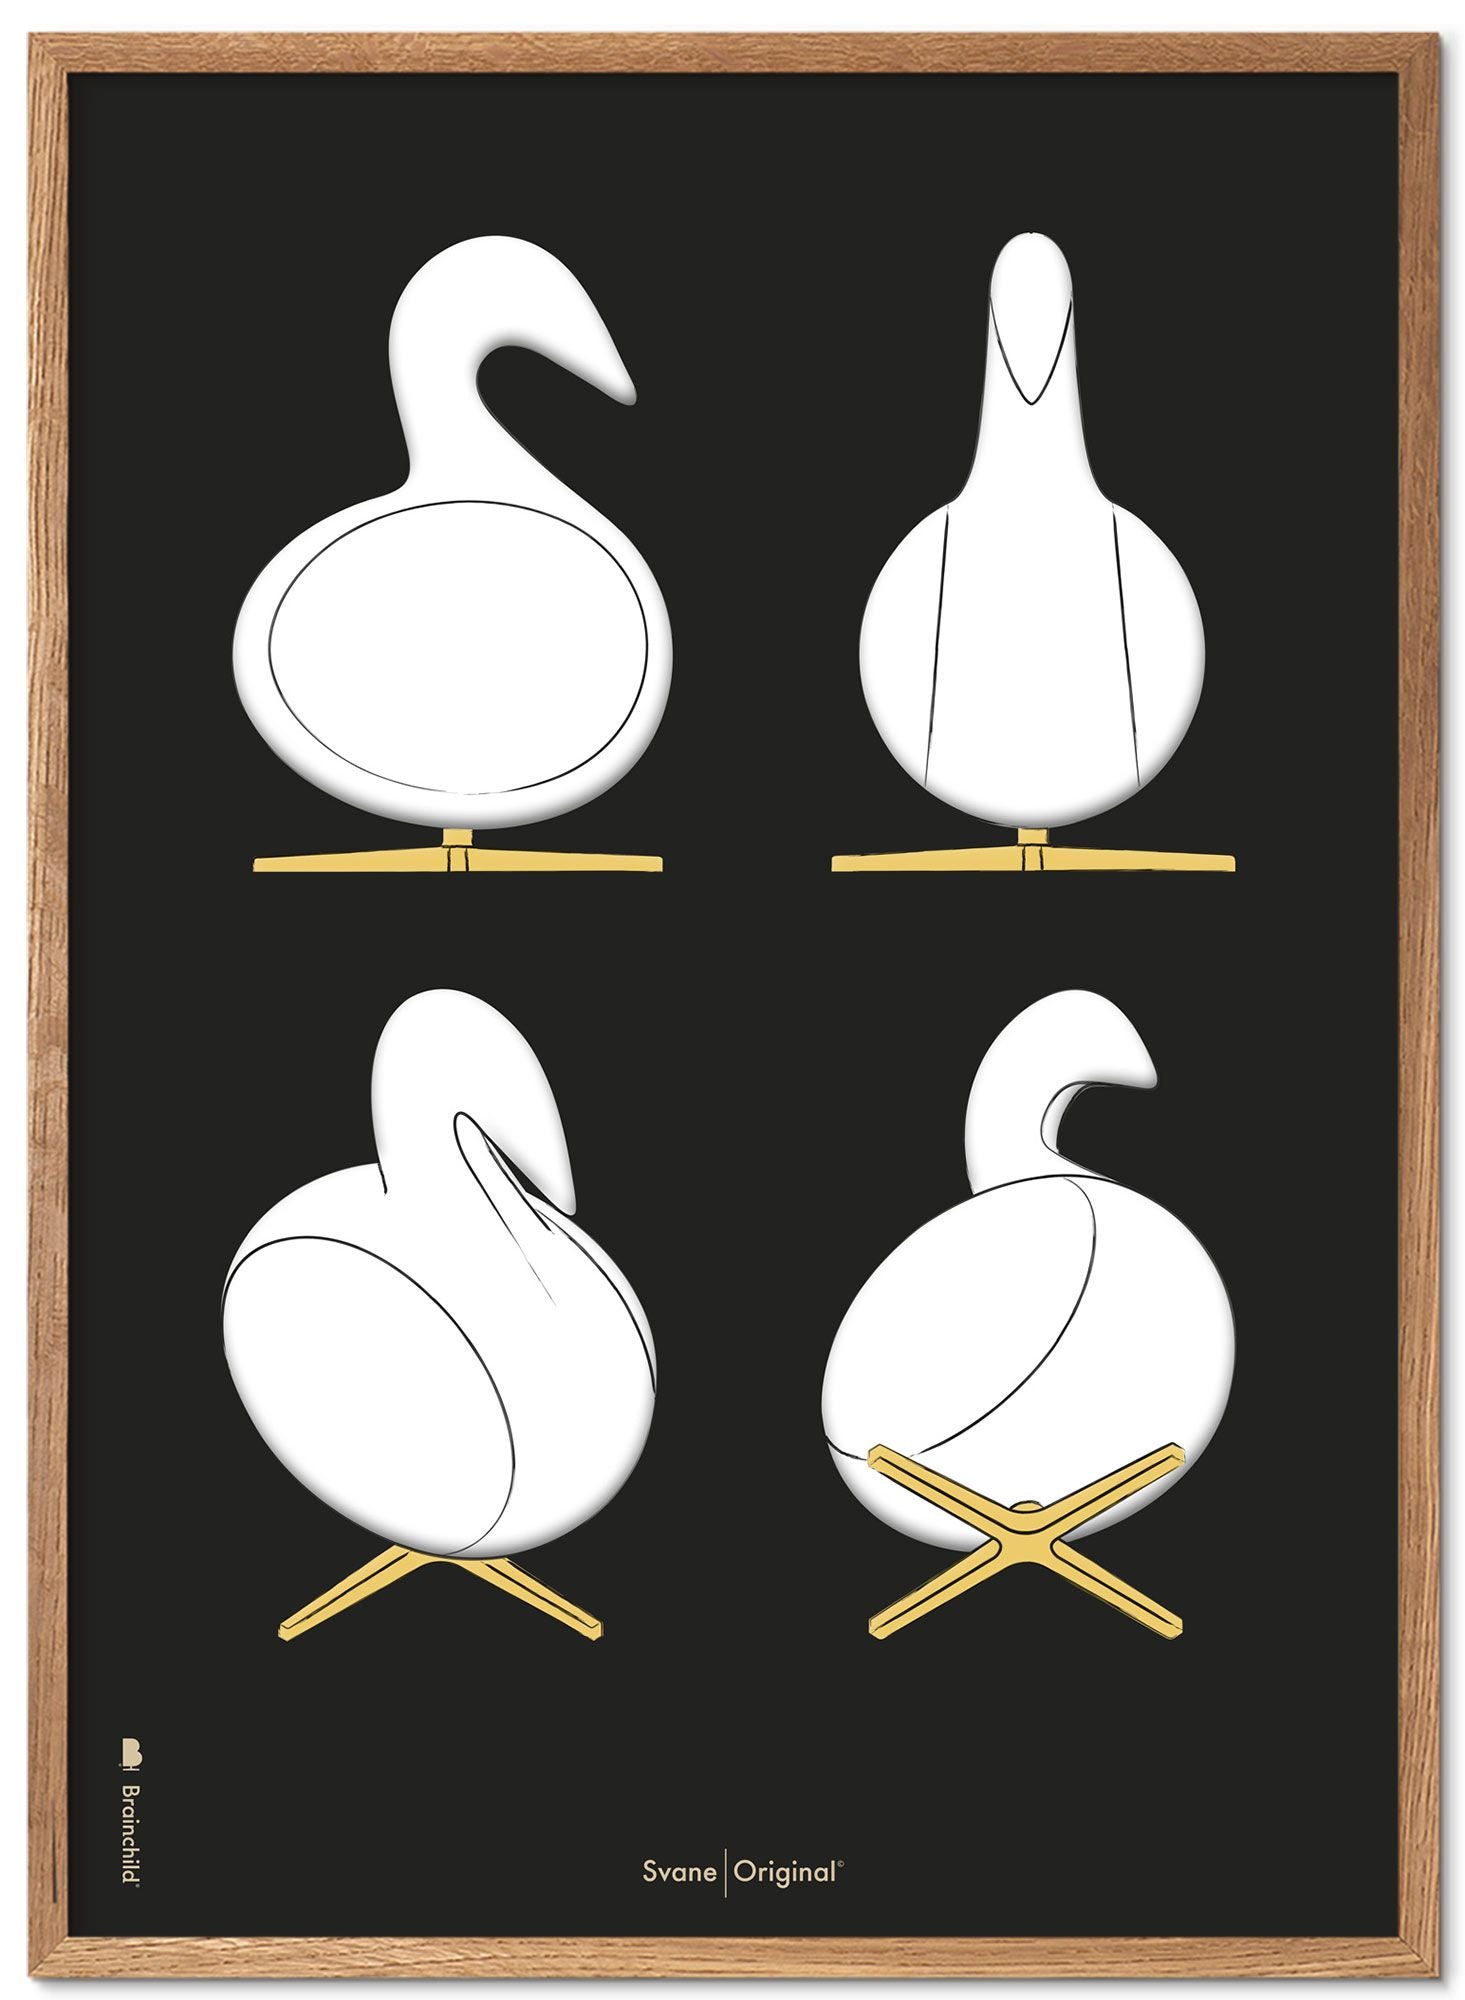 Marco de carteles de bocetos de diseño de Swan.